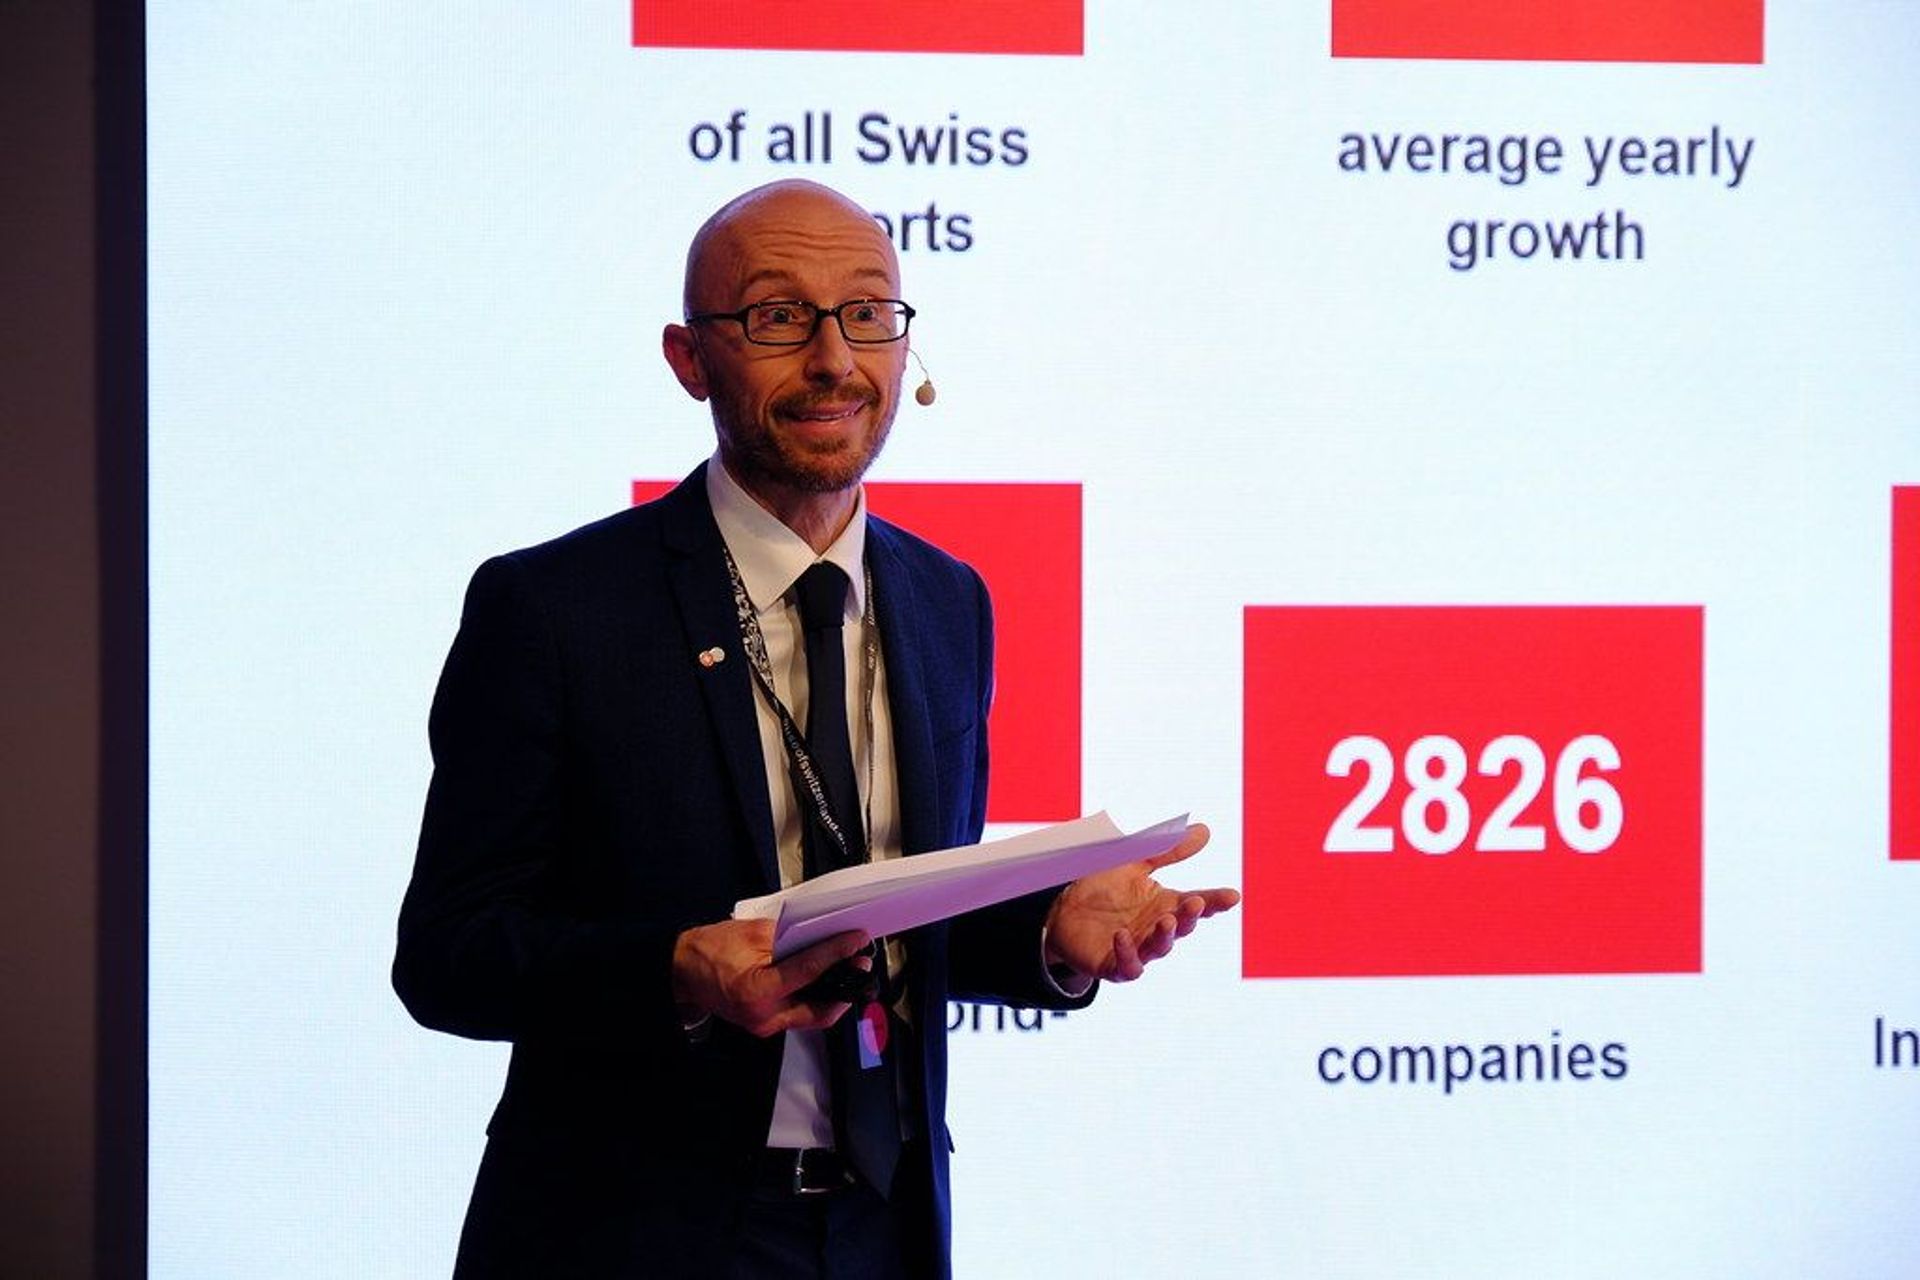 Ο Stefan Zwicky, Επικεφαλής του Swiss Business Hub Italy, μίλησε για την εισαγωγή και το θέμα "Ελβετία - η τοποθεσία σας για εξατομικευμένη ιατρική" στην εκδήλωση "Trends in Personalized Health" στο Μιλάνο στις 25 Μαΐου 2022